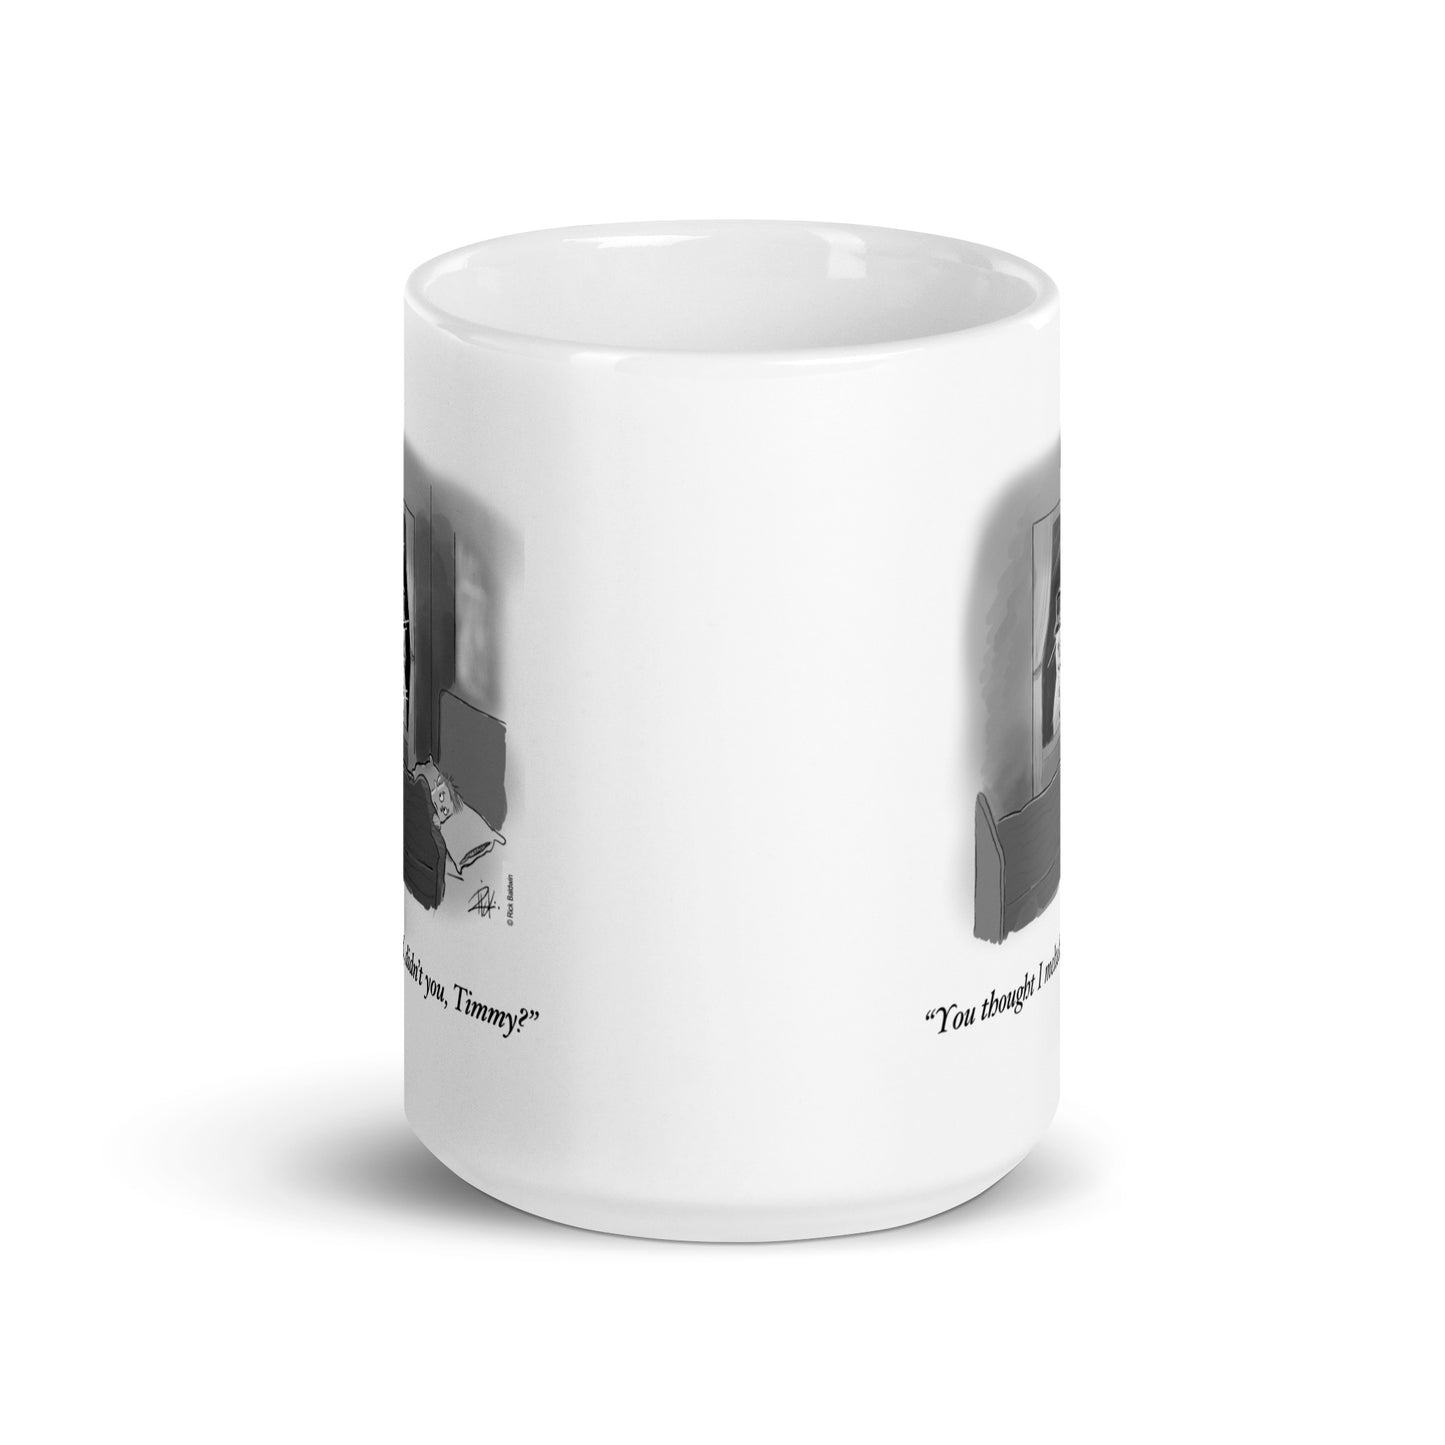 Melted - White Glossy Mug by RICK BALDWIN